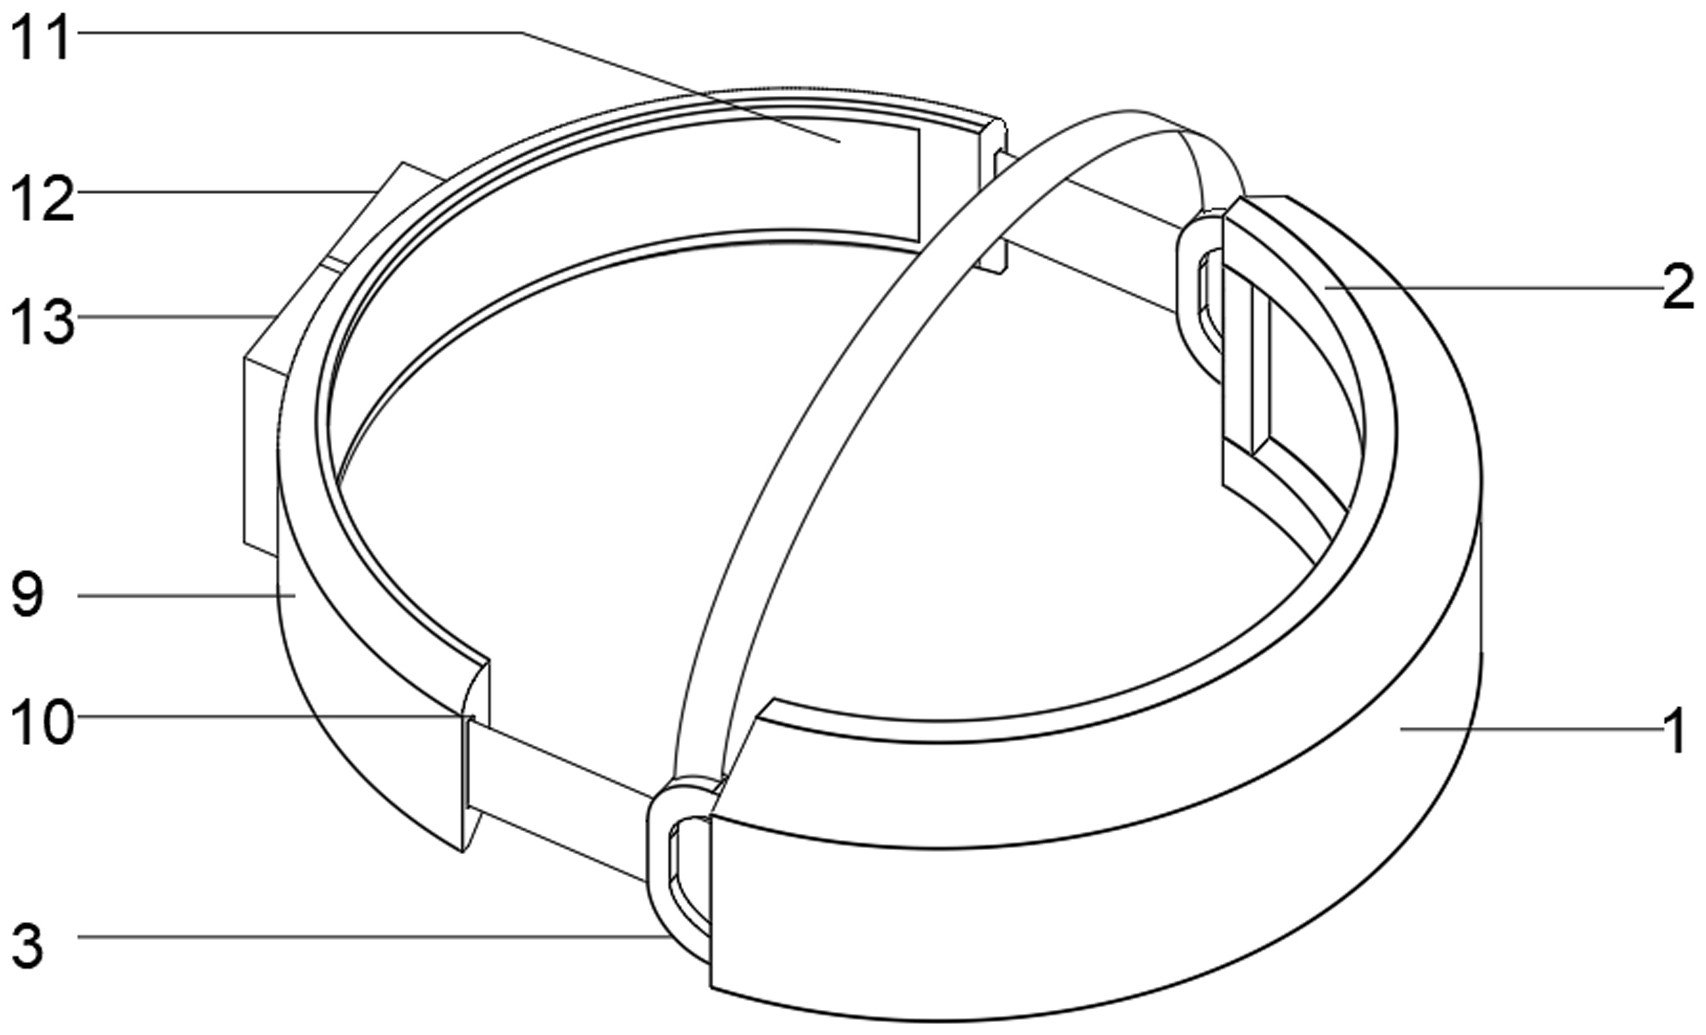 一种新型具有按摩功能的VR眼镜专利图